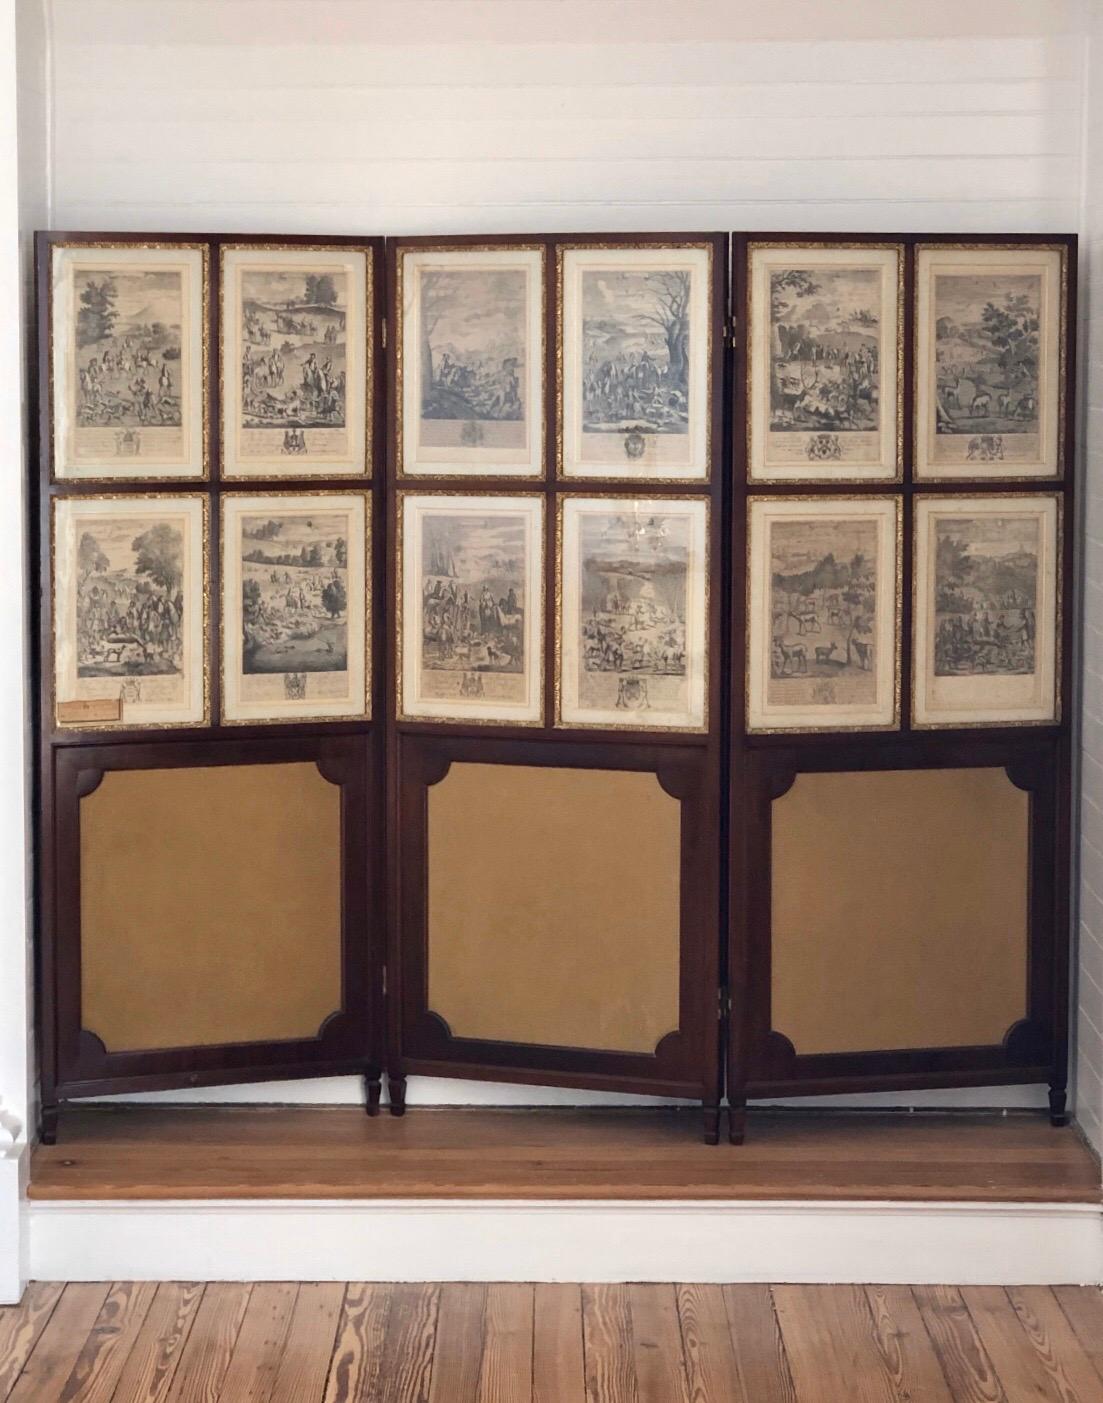 Vierundzwanzig Stahlstiche englischer Jagdszenen von Richard Blome (1635-1705), gerahmt in einem Paar dreiteiliger Mahagoni-Regency-Bildschirme, 17. Die Radierungen sind aus 